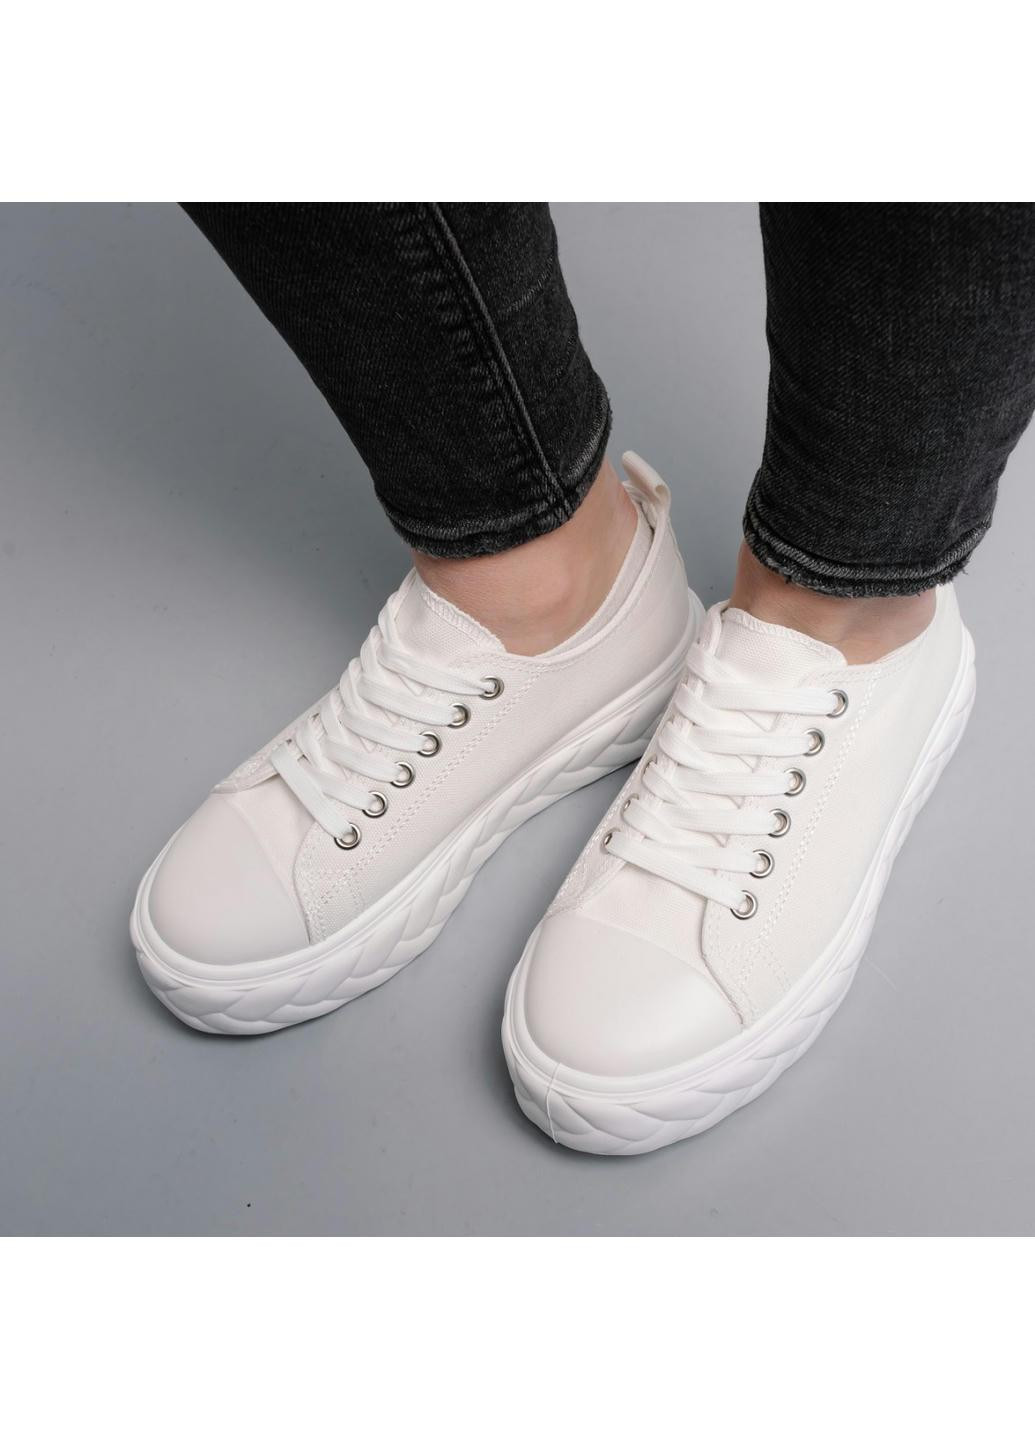 Белые демисезонные женские кроссовки giselle 3987 235 белый Fashion